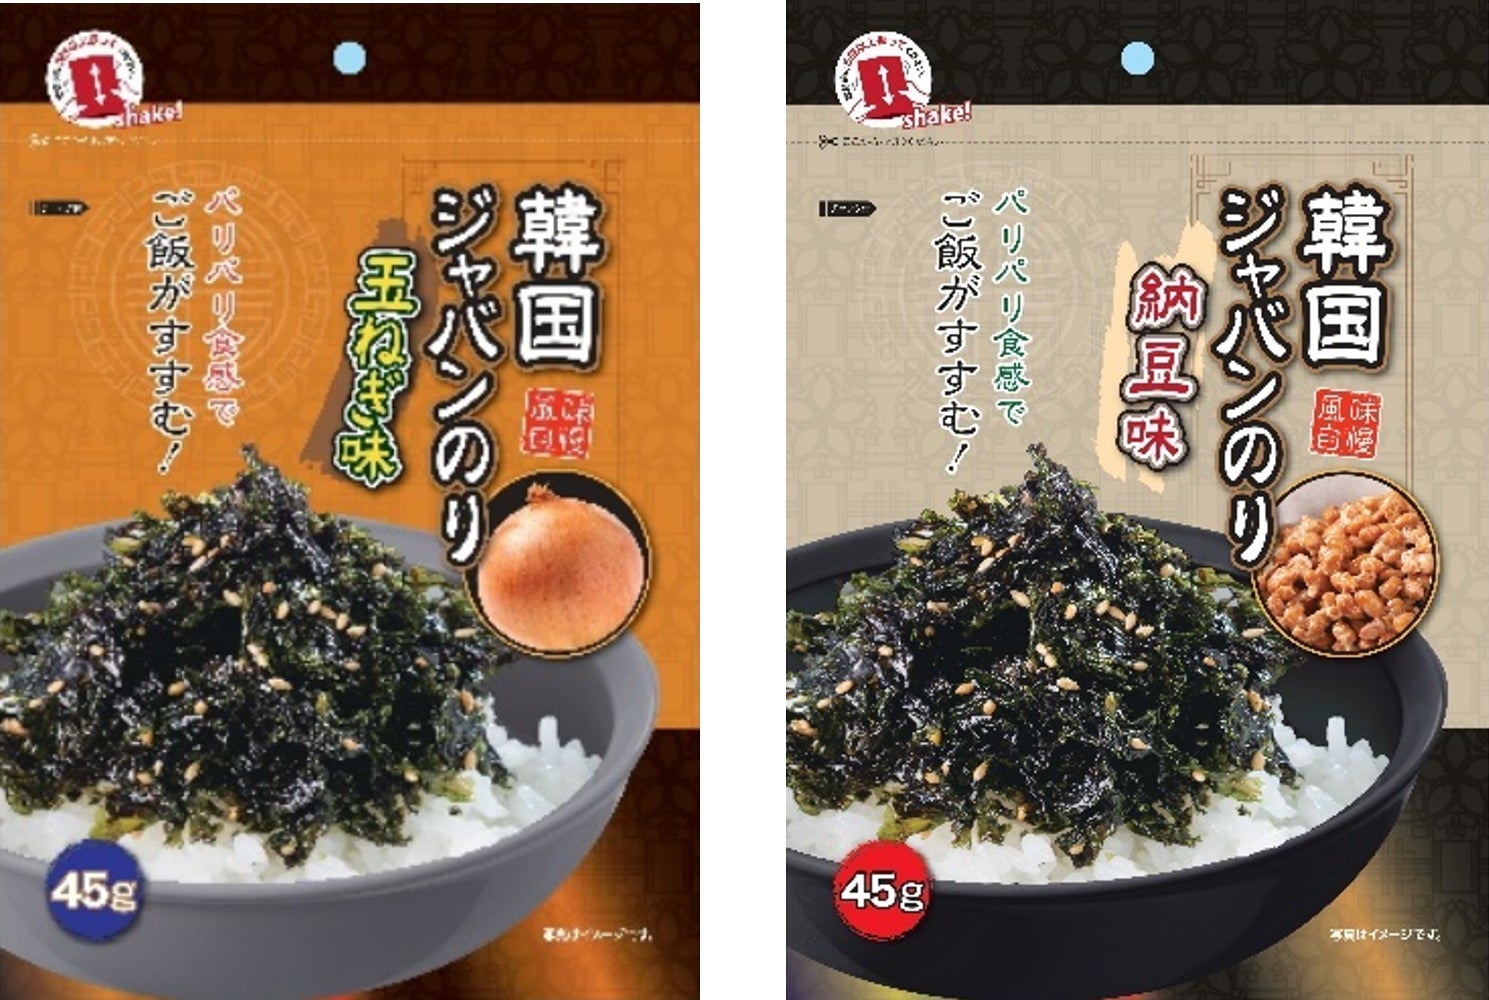 北海道小豆を100％使用！パウチタイプで使いやすい「カンピー 北海道ゆであずき 低甘味仕上げ」を新発売！